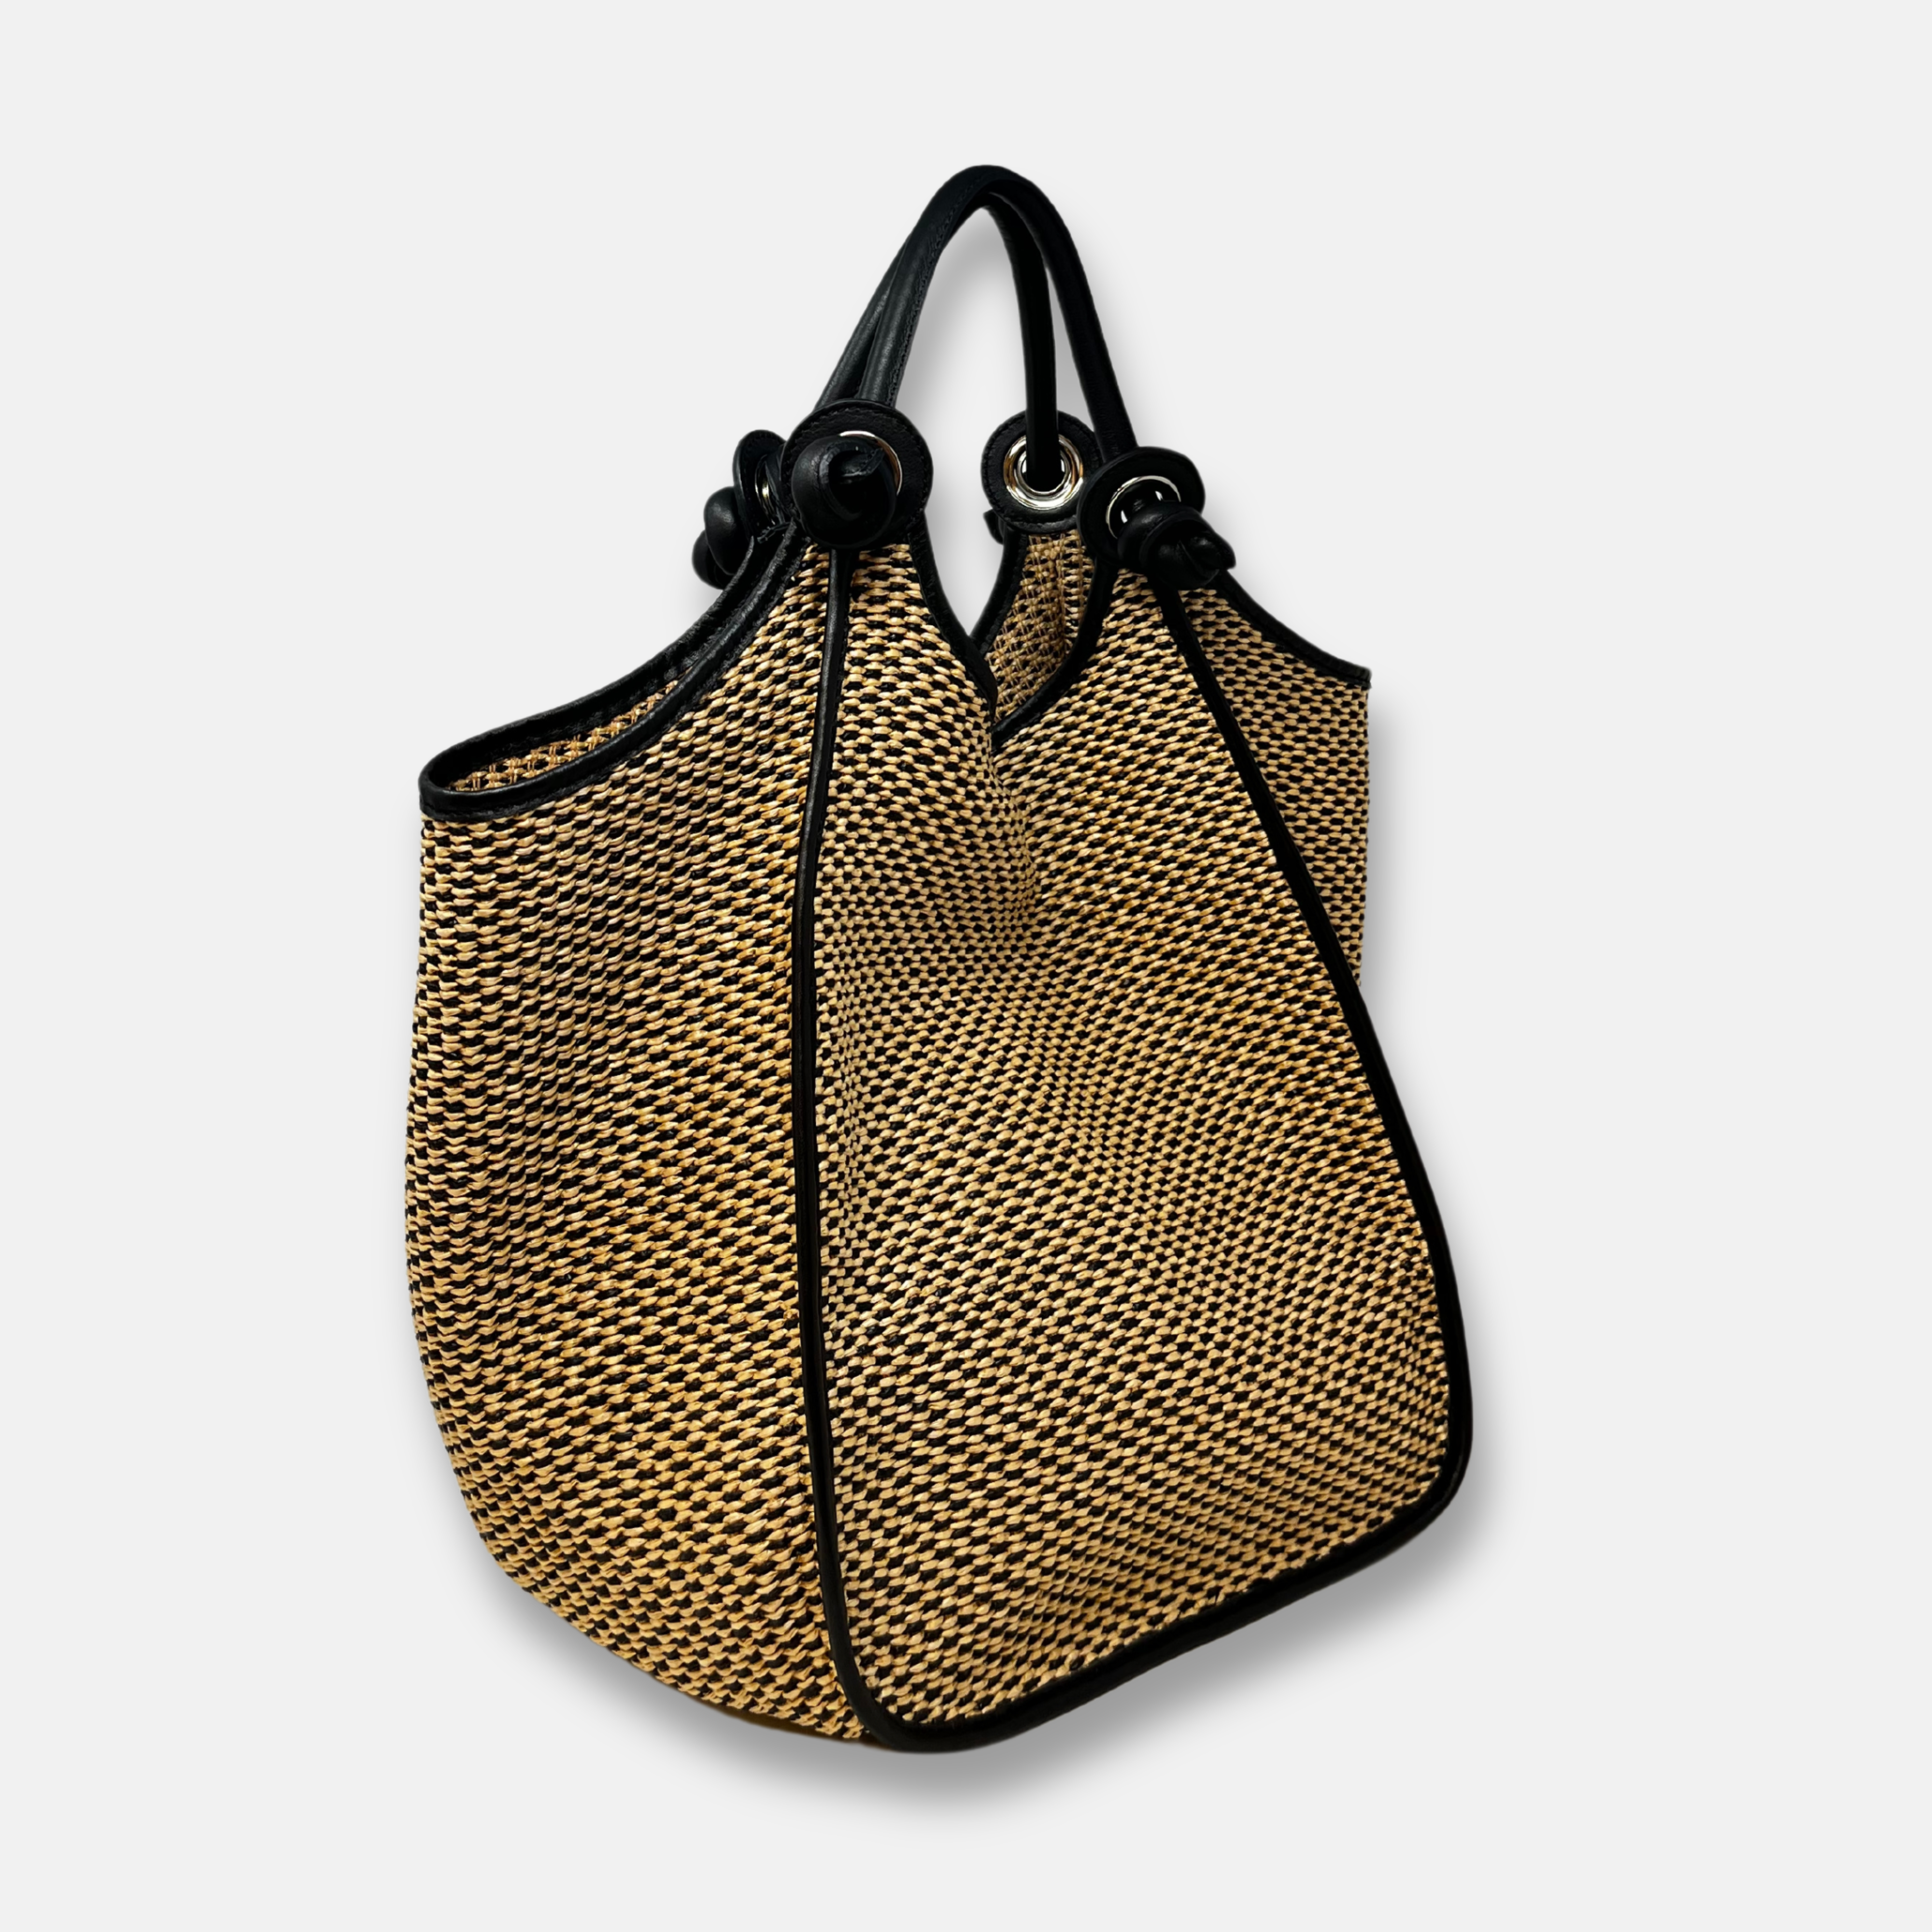 Large Raffia Shoulder Bag with Knotted Handles Natural - Big Bag NY